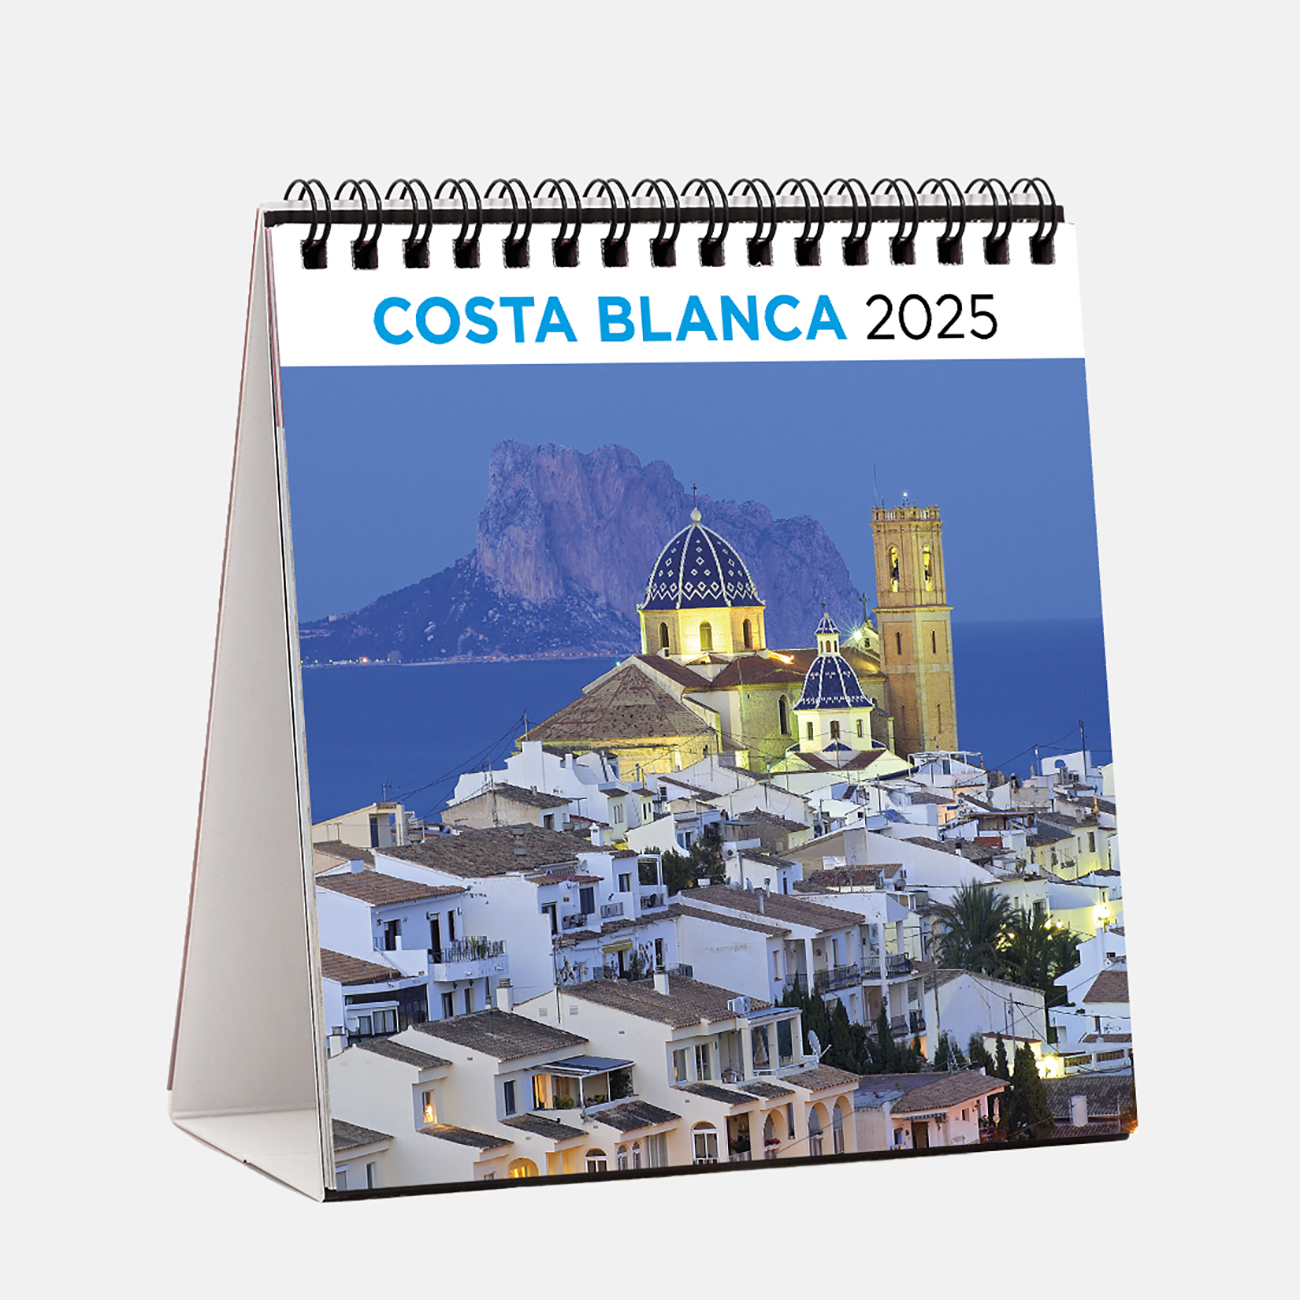 Calendar 2025 Costa Blanca s25bl calendario sobremesa 2025 costa blanca